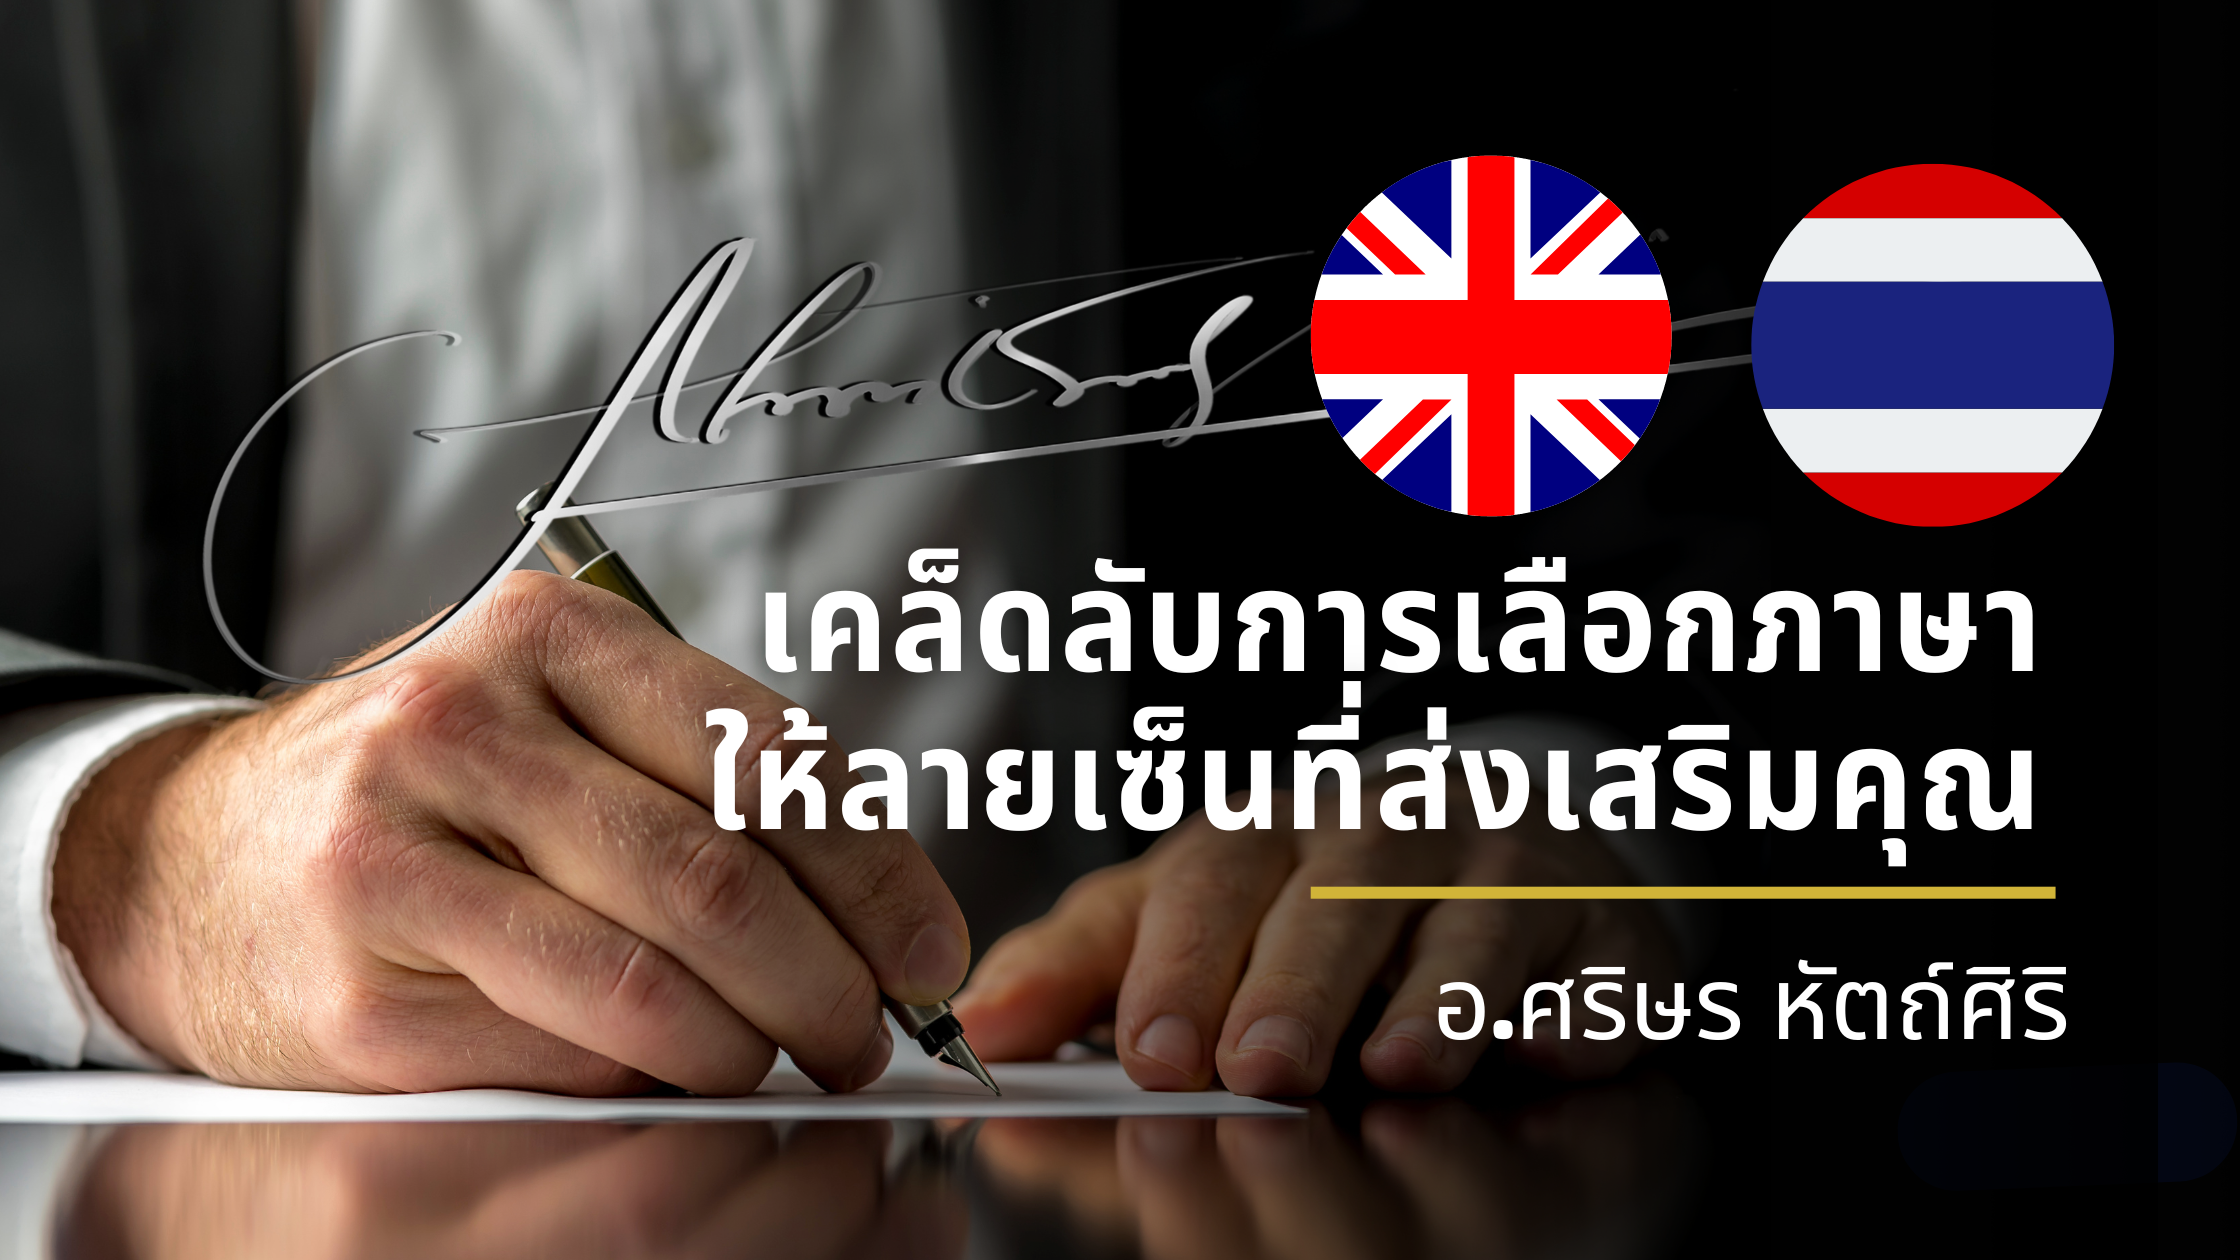 ออกแบบลายเซ็นภาษาไทยหรืออังกฤษ